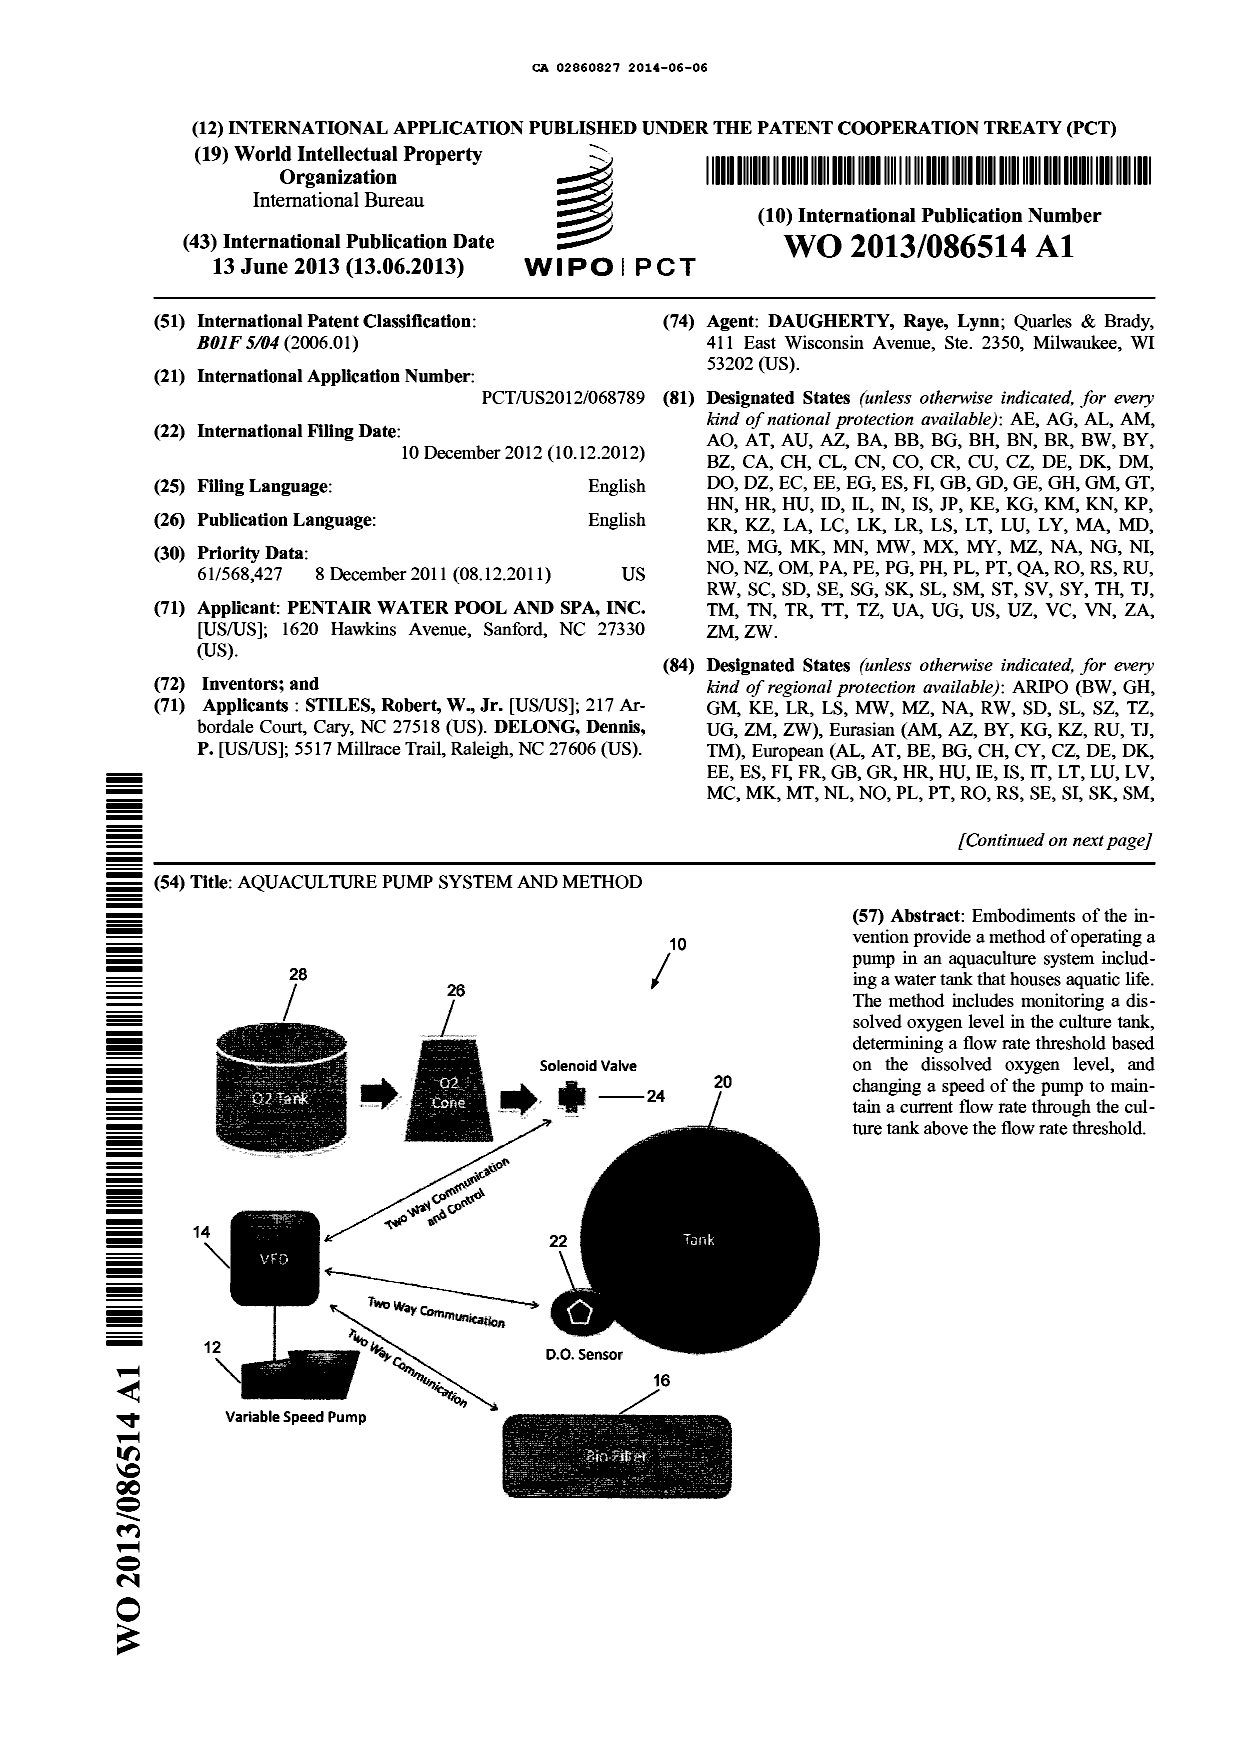 Document de brevet canadien 2860827. Abrégé 20140606. Image 1 de 2